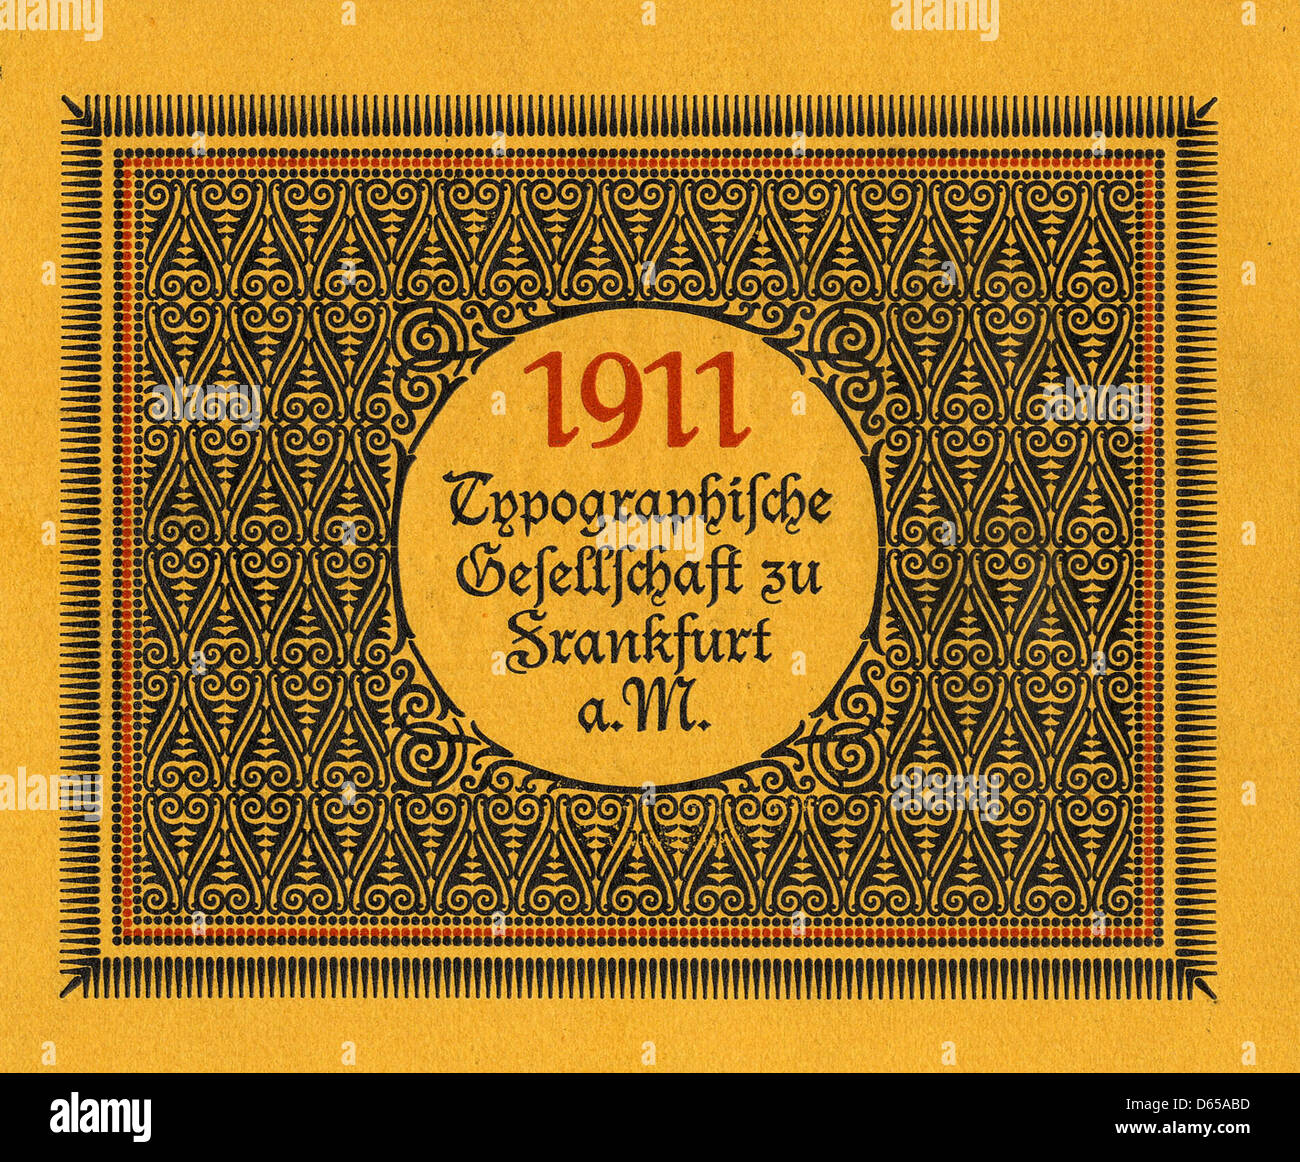 Typographische Gefellfchaft 1911 Stockfoto